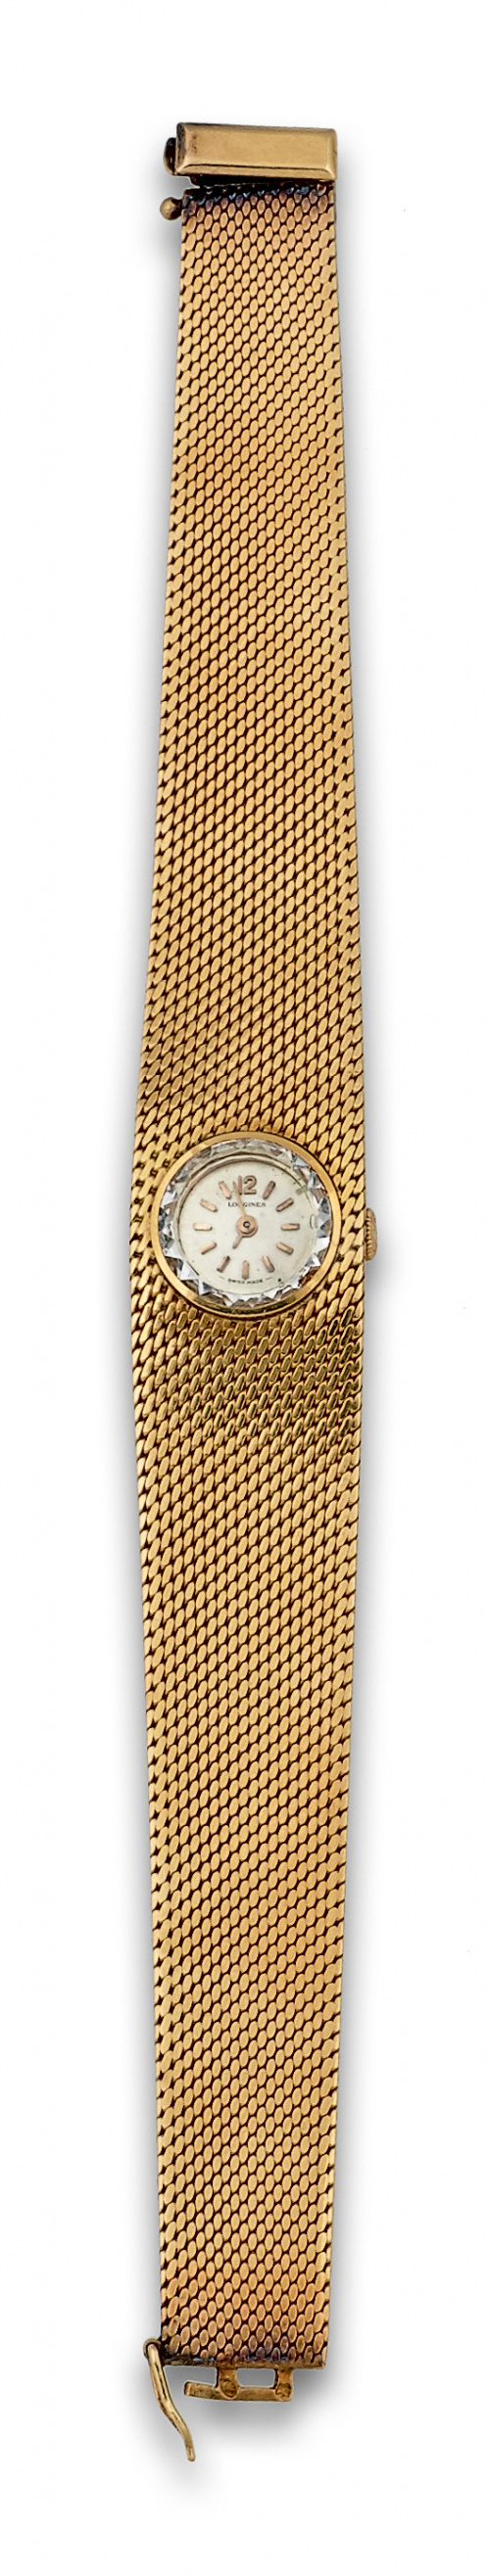 Reloj de pulsera LONGINES en malla ancha de oro de 18K años